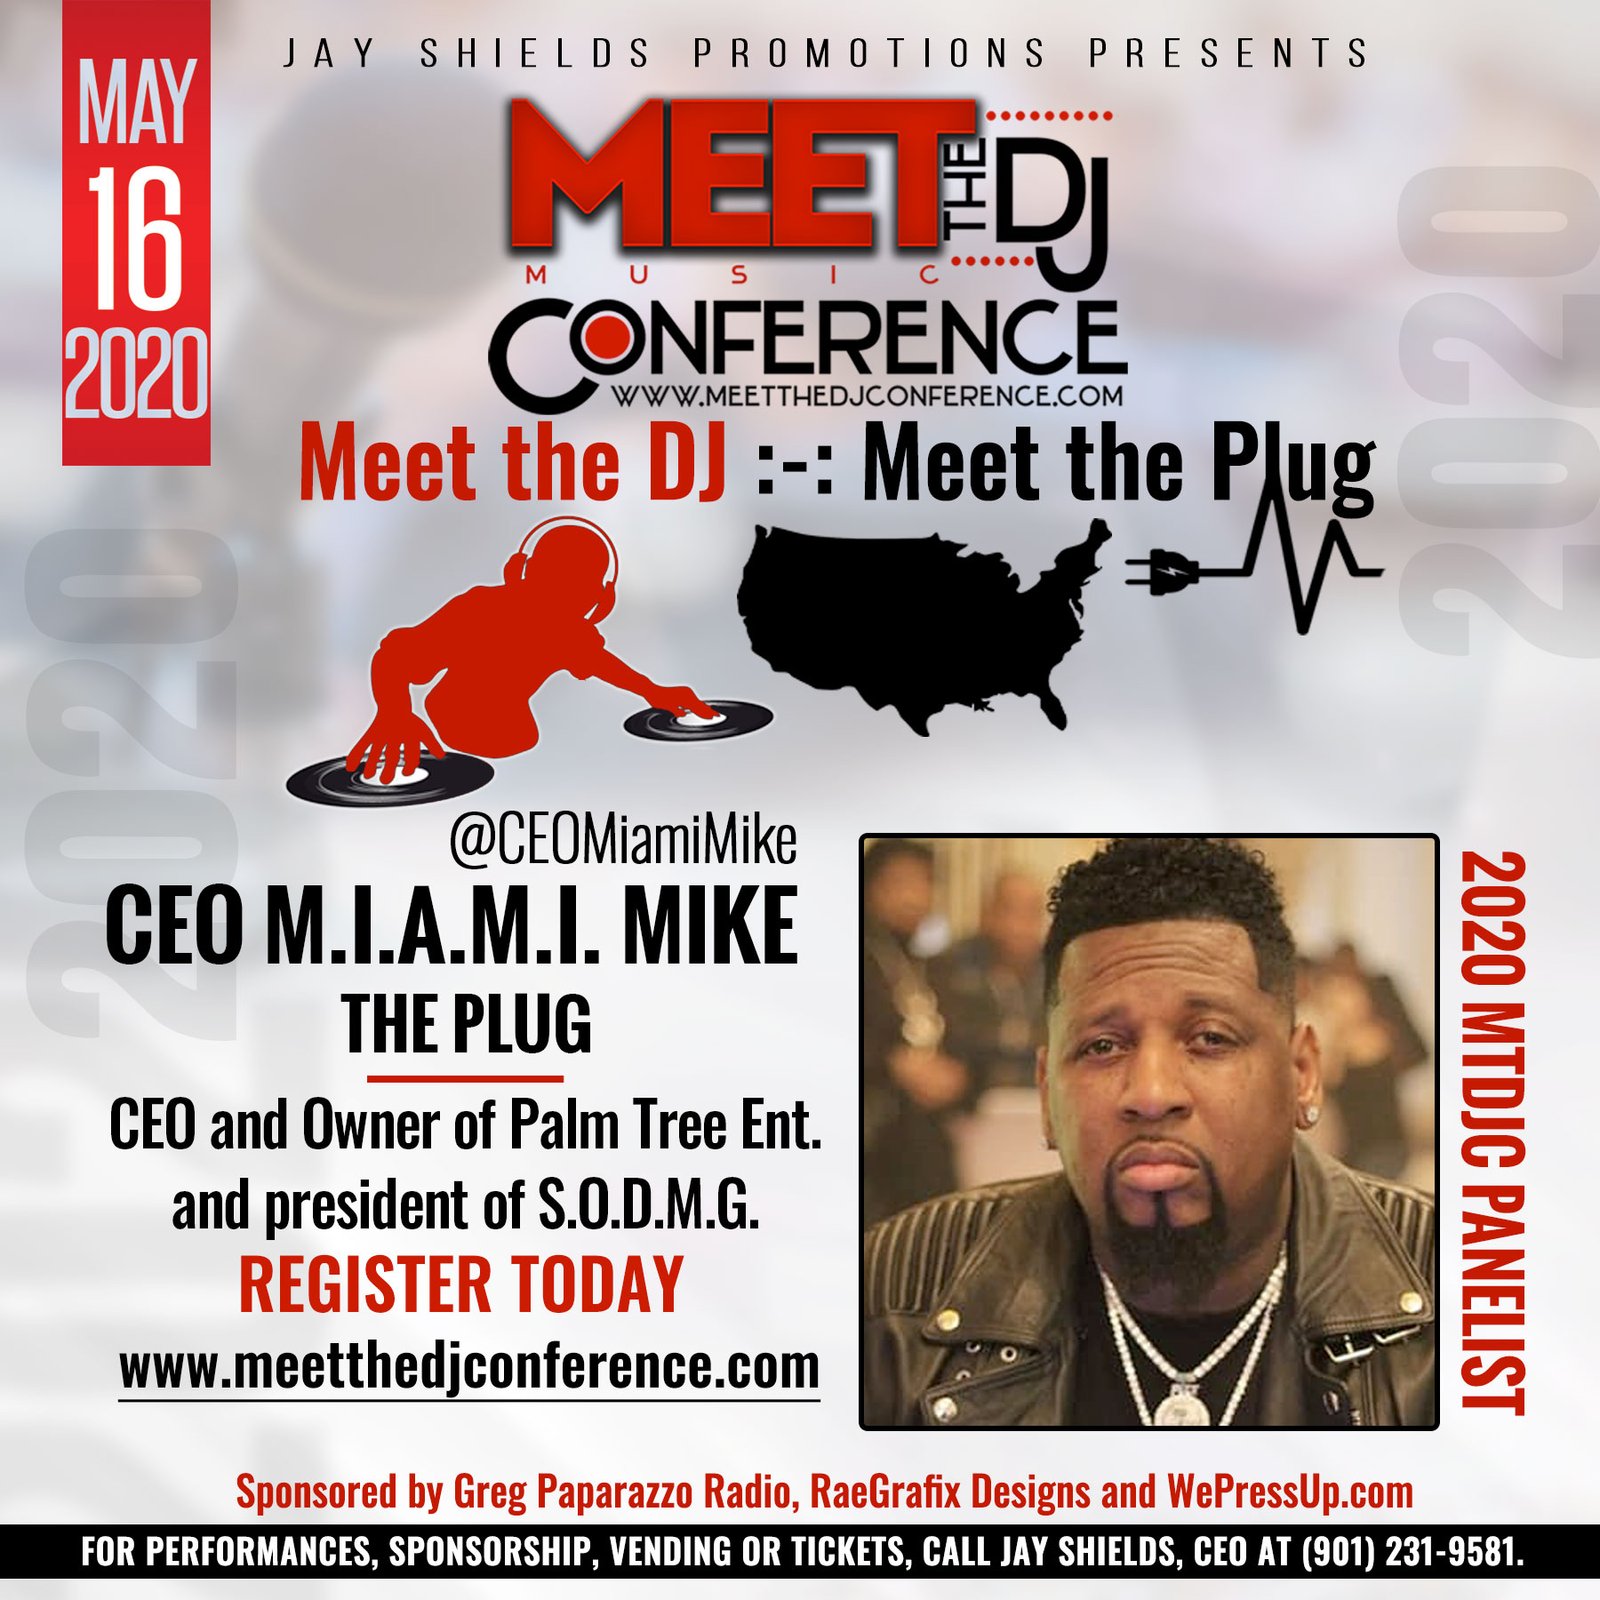 2020 Meet the DJ Conference CEO M.I.A.M.I. Mike Panelist Palm Tree